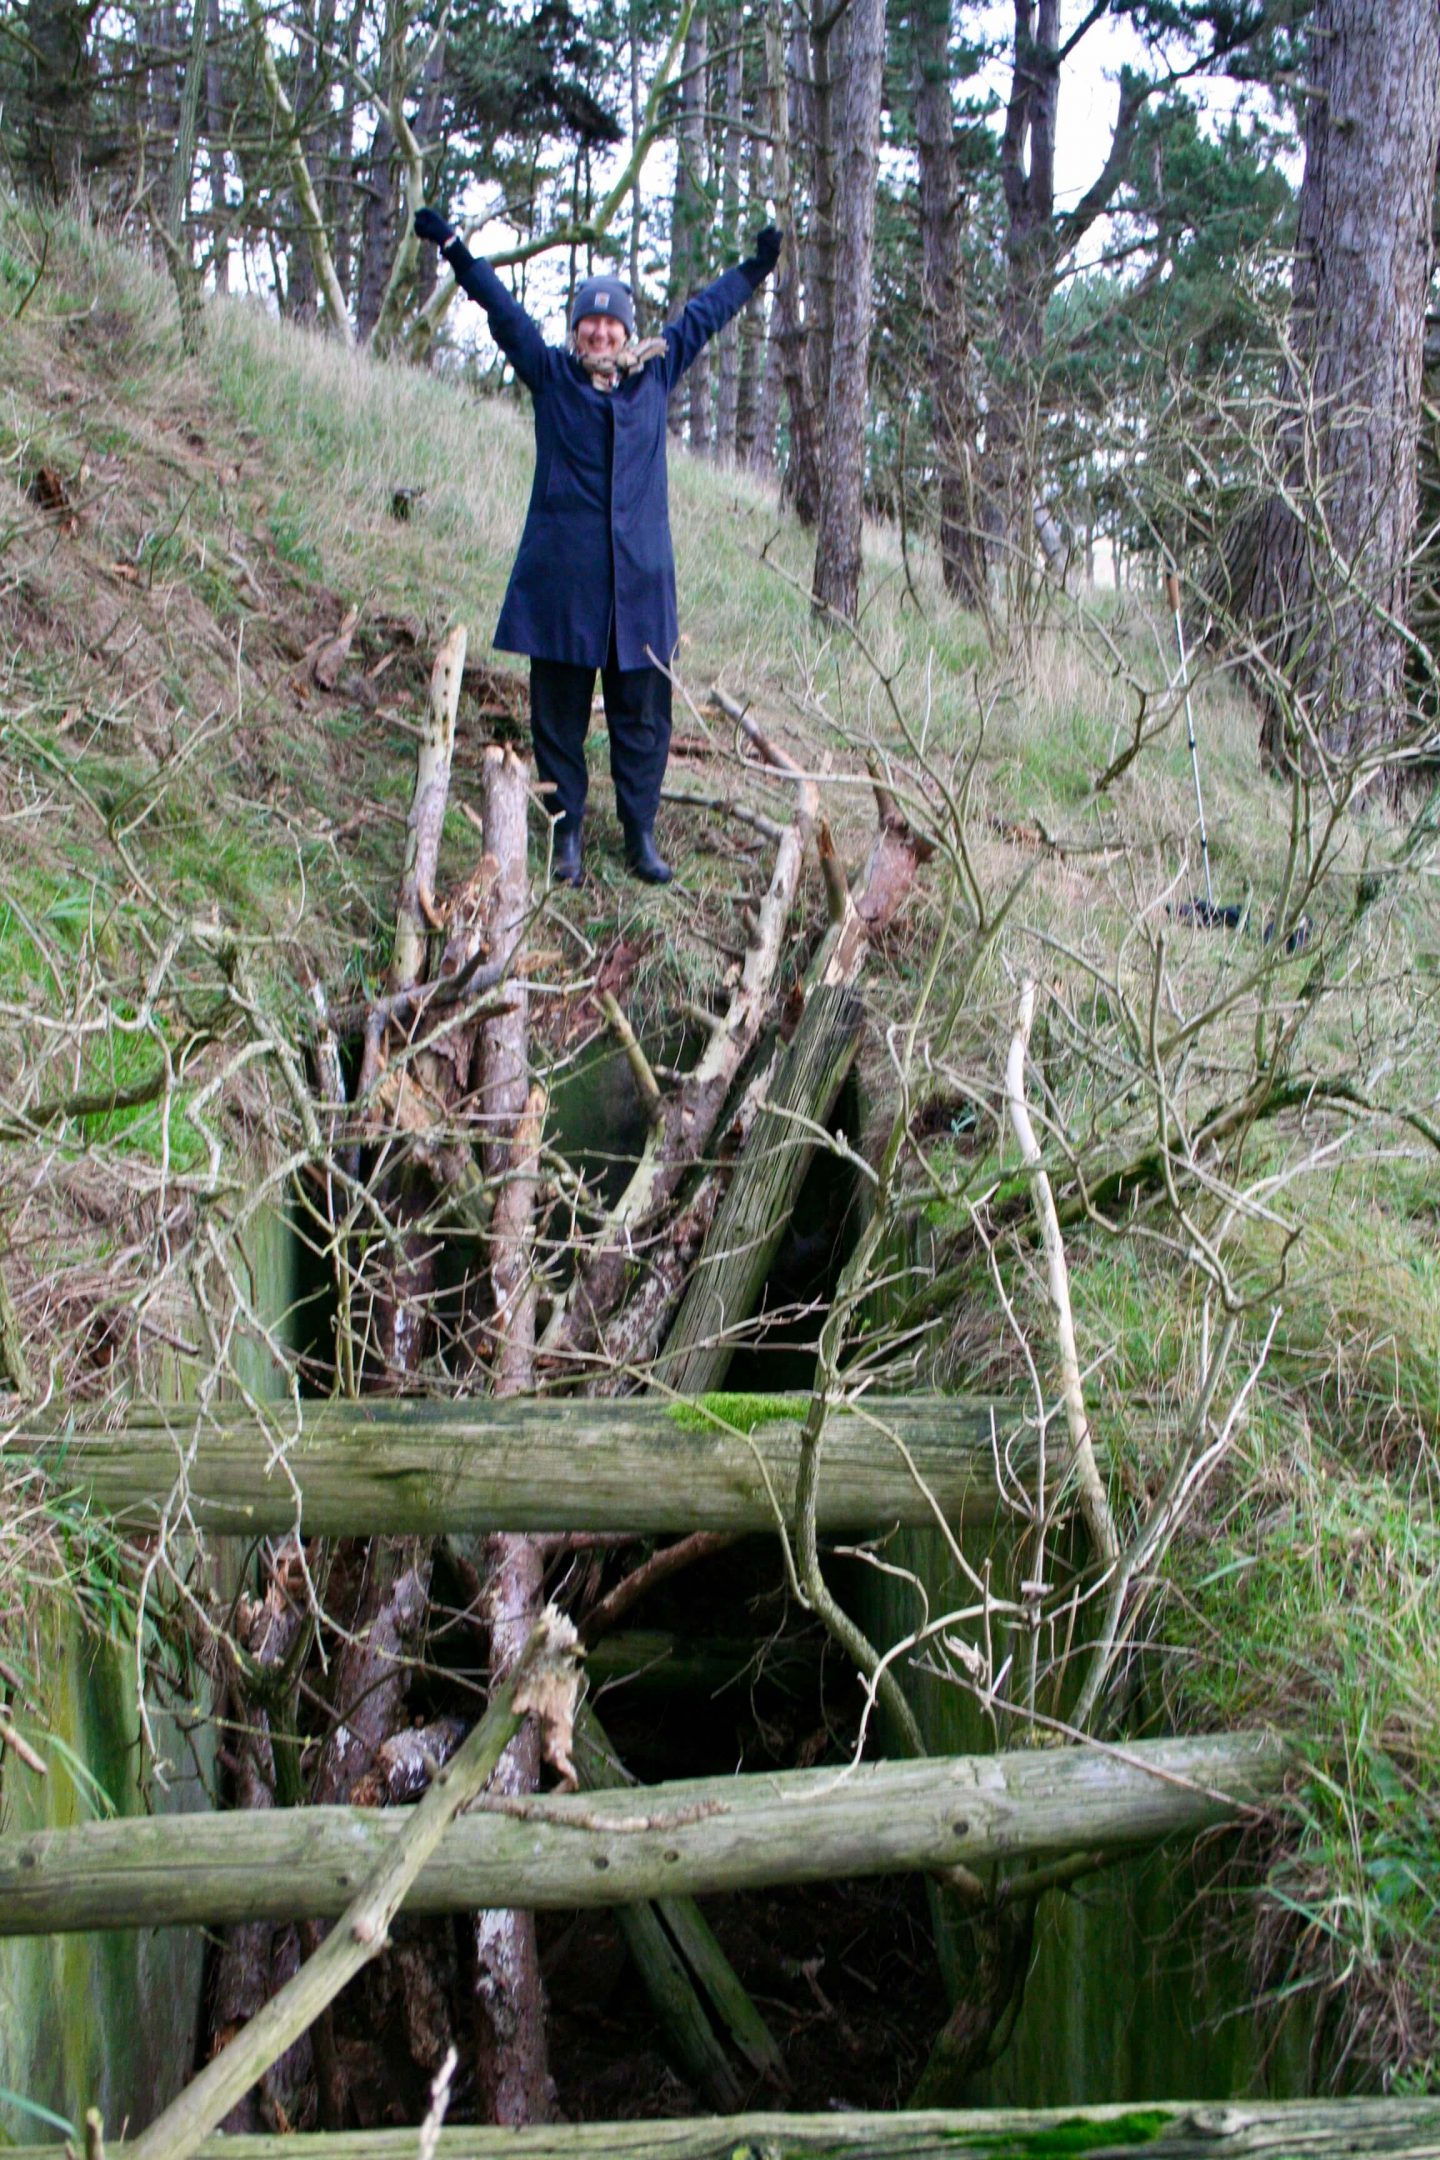 Mig foran hullet her til morgen. Grævlingen var kommet op via træstamme-stigen og jeg fejrede det med armene i vejret.